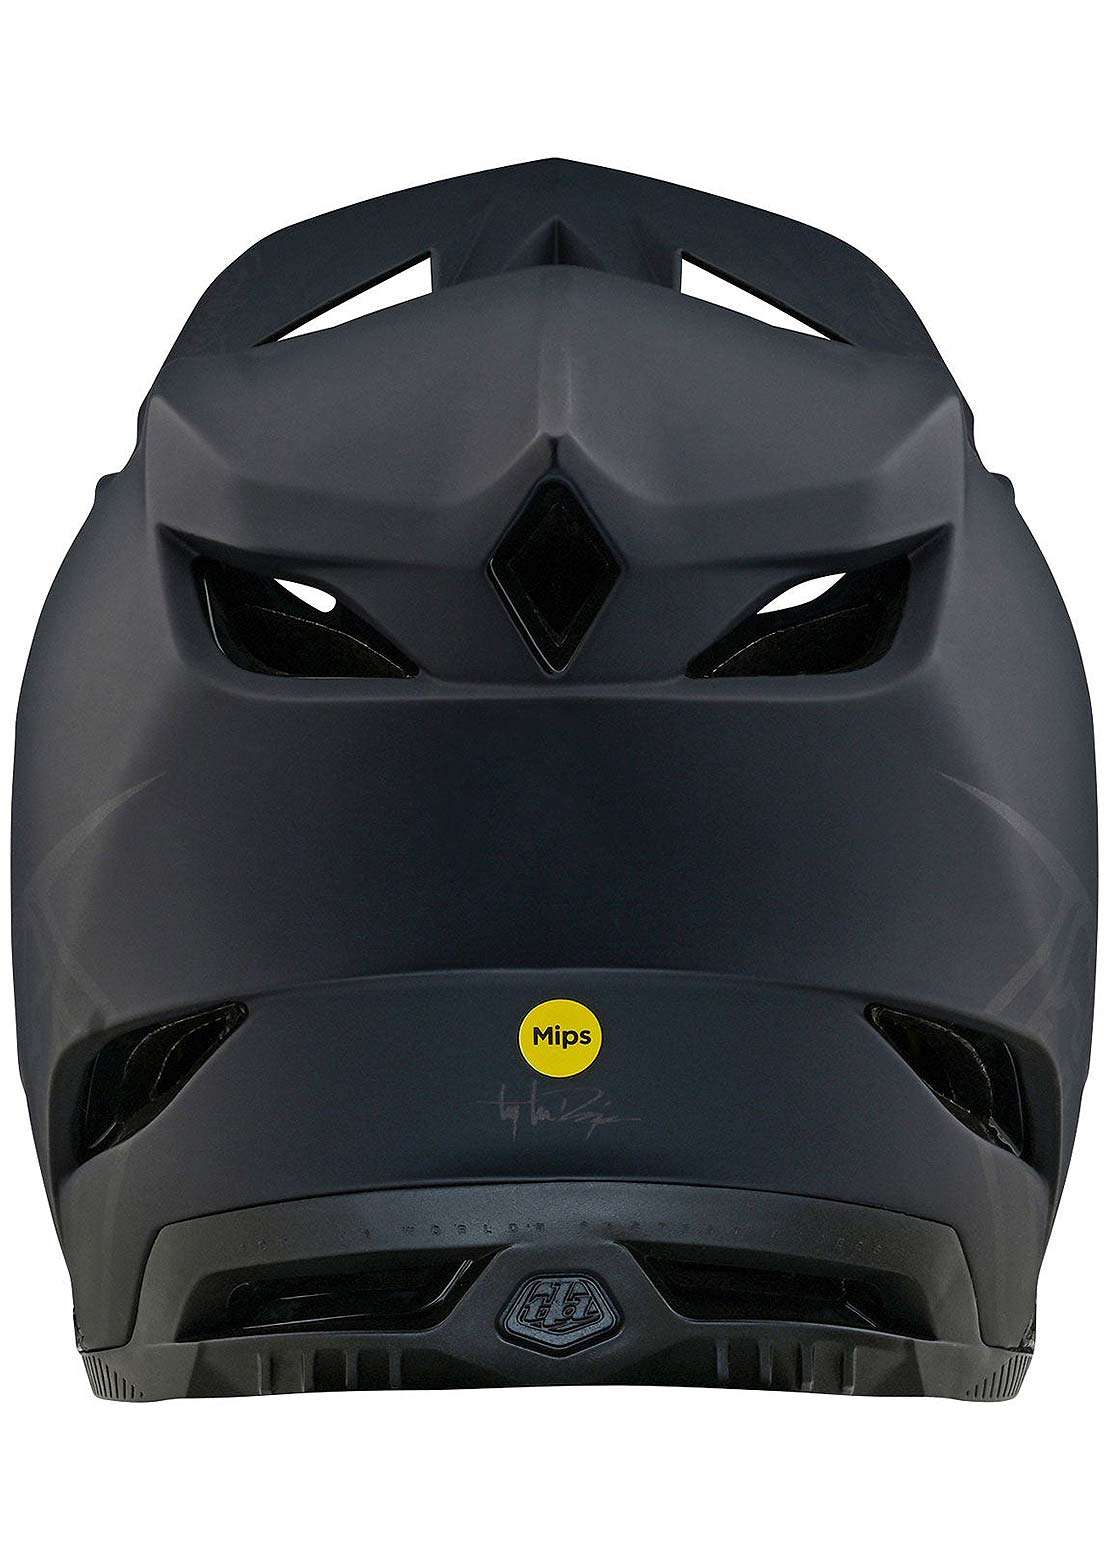 Troy Lee D4 Polyacrylite MIPS Helmet Black